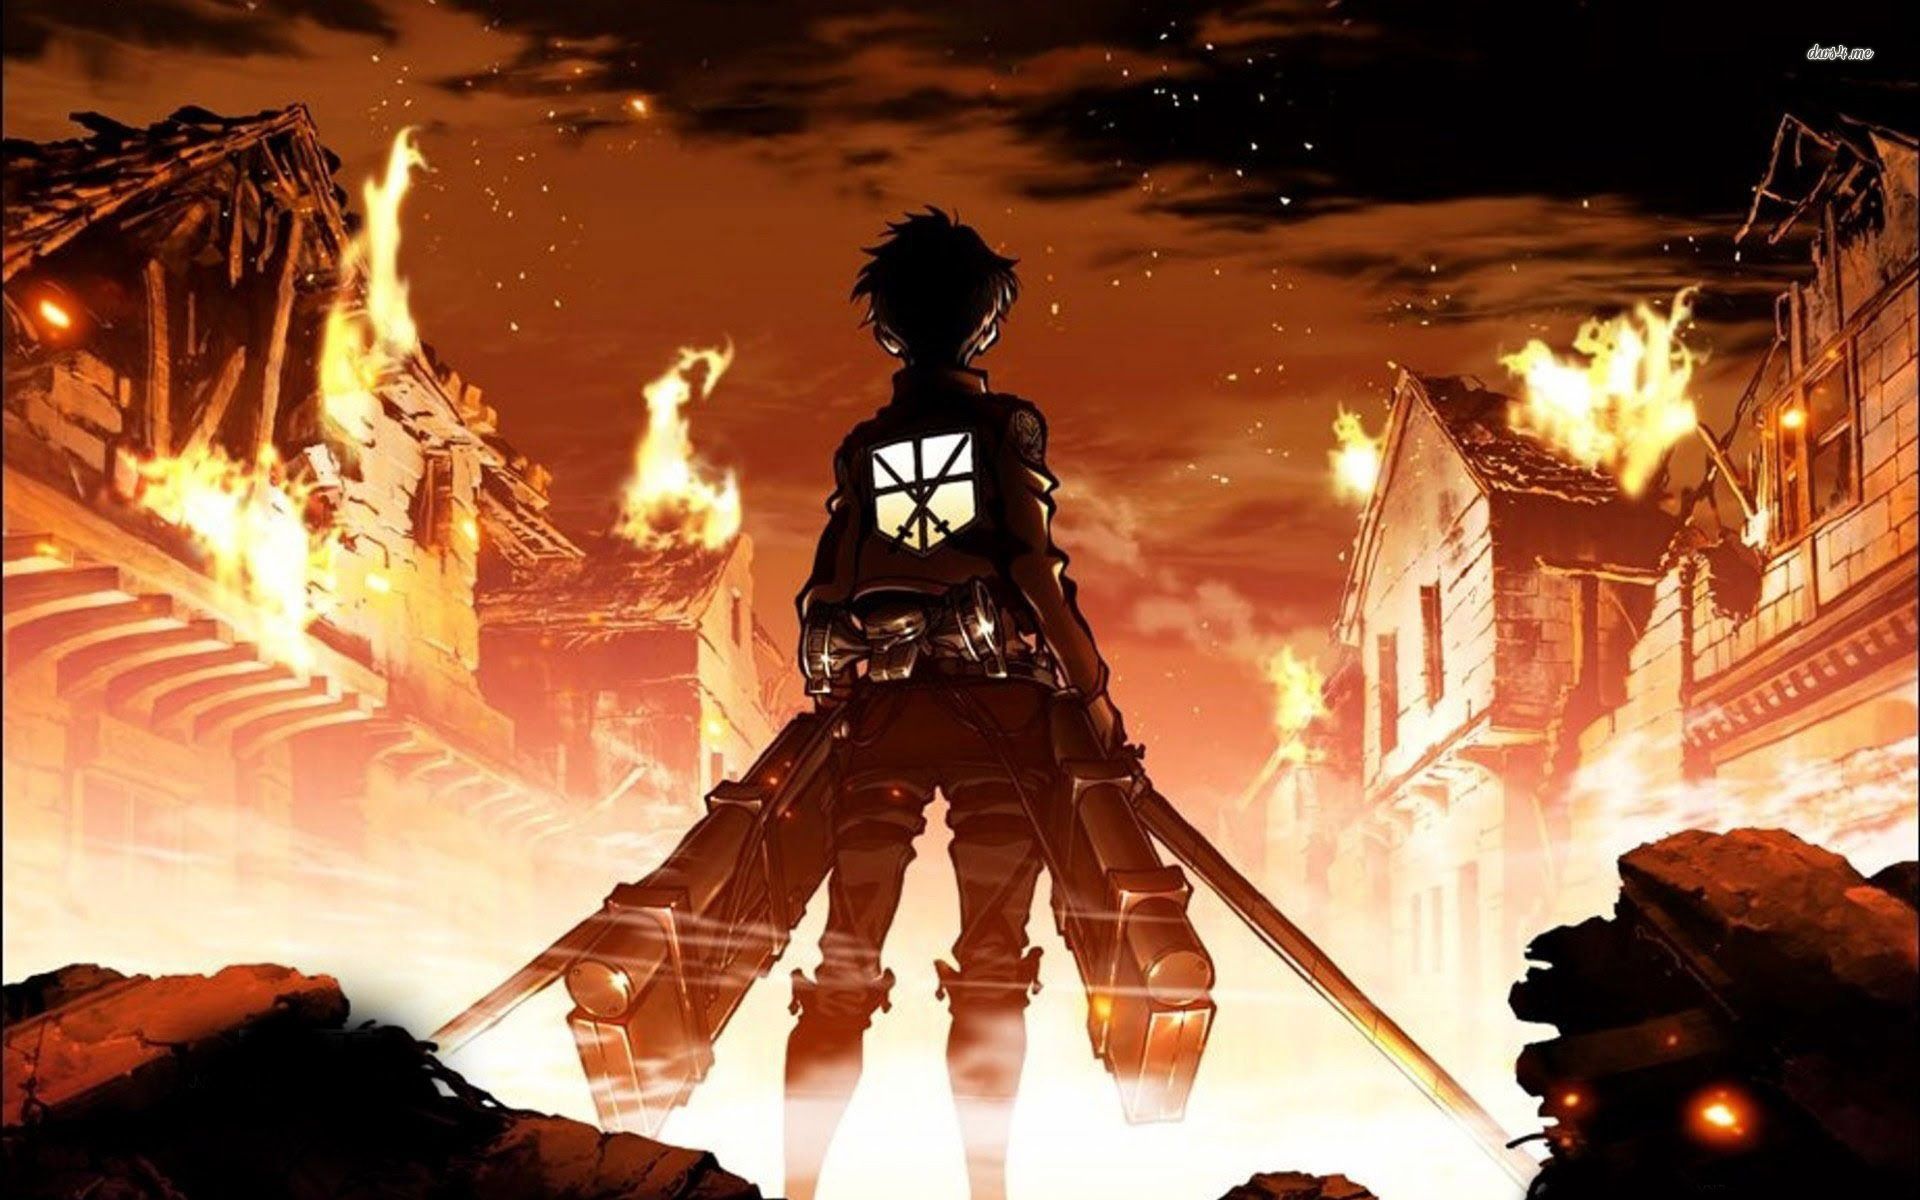 Attack on Titan HD wallpaper. Ilustrasi karakter, Ilustrasi manga, Orang animasi